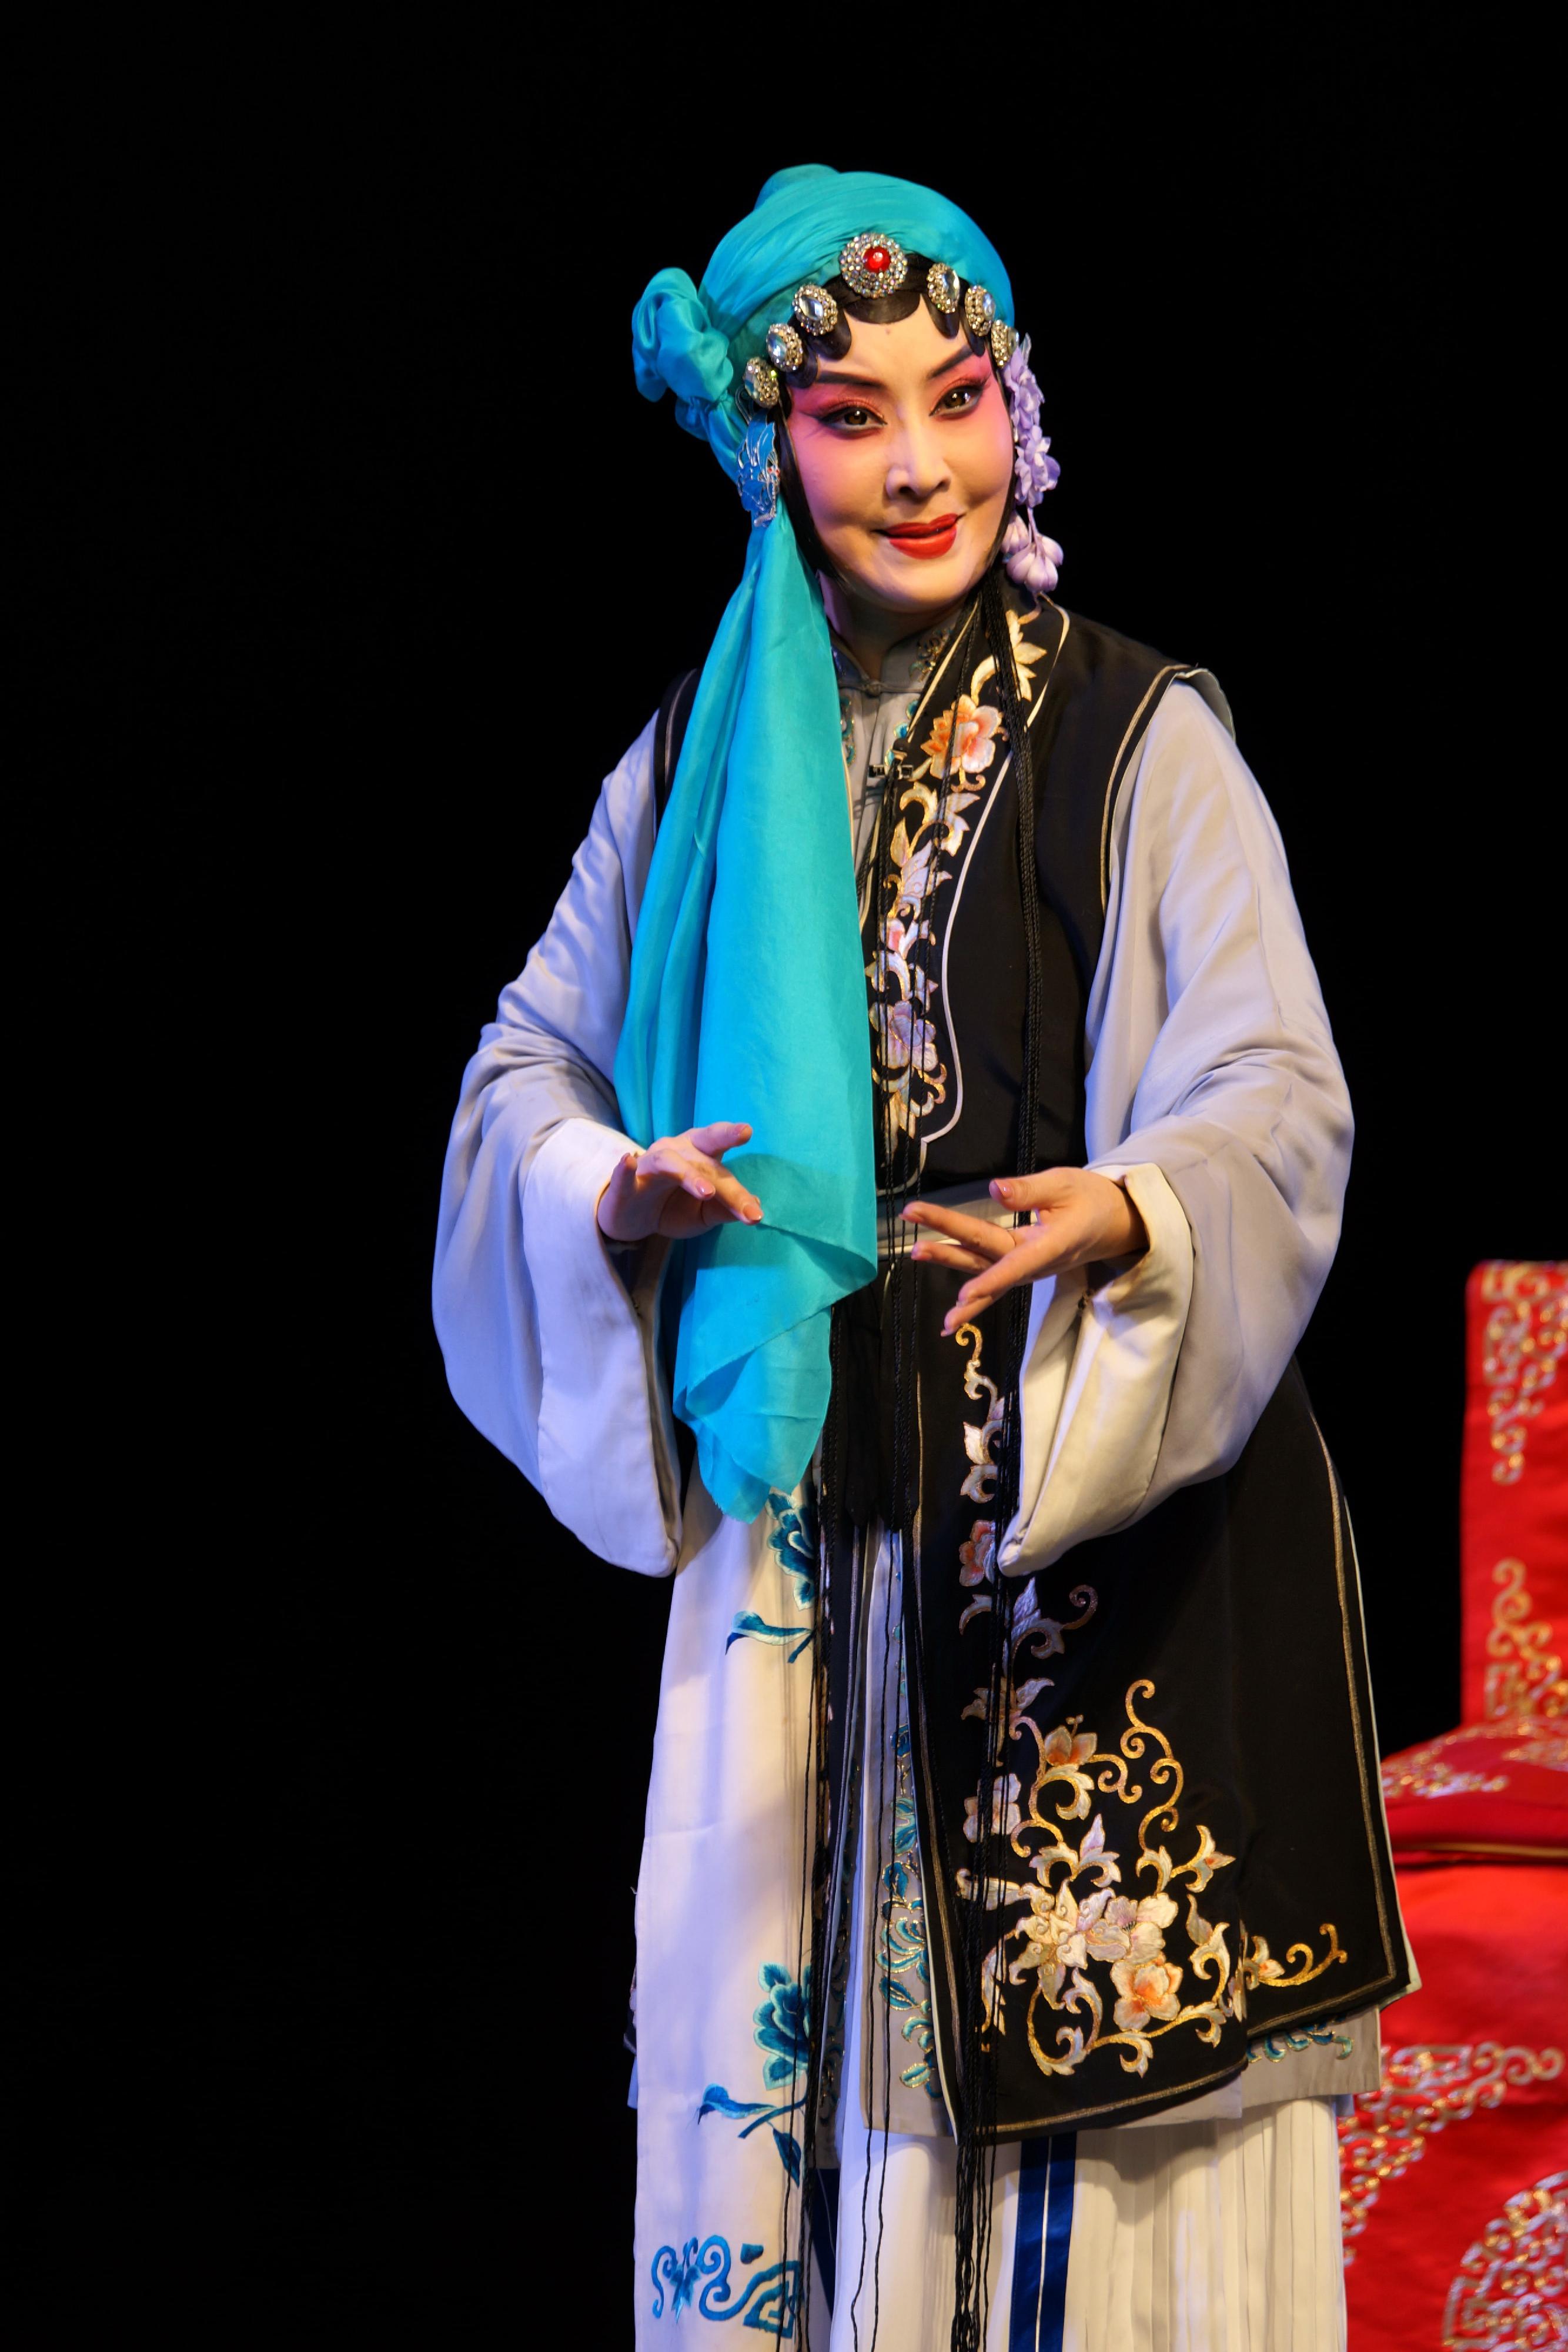 首届中华文化节七月上演三场北方昆曲经典。图示《货郎旦‧女弹》剧照。